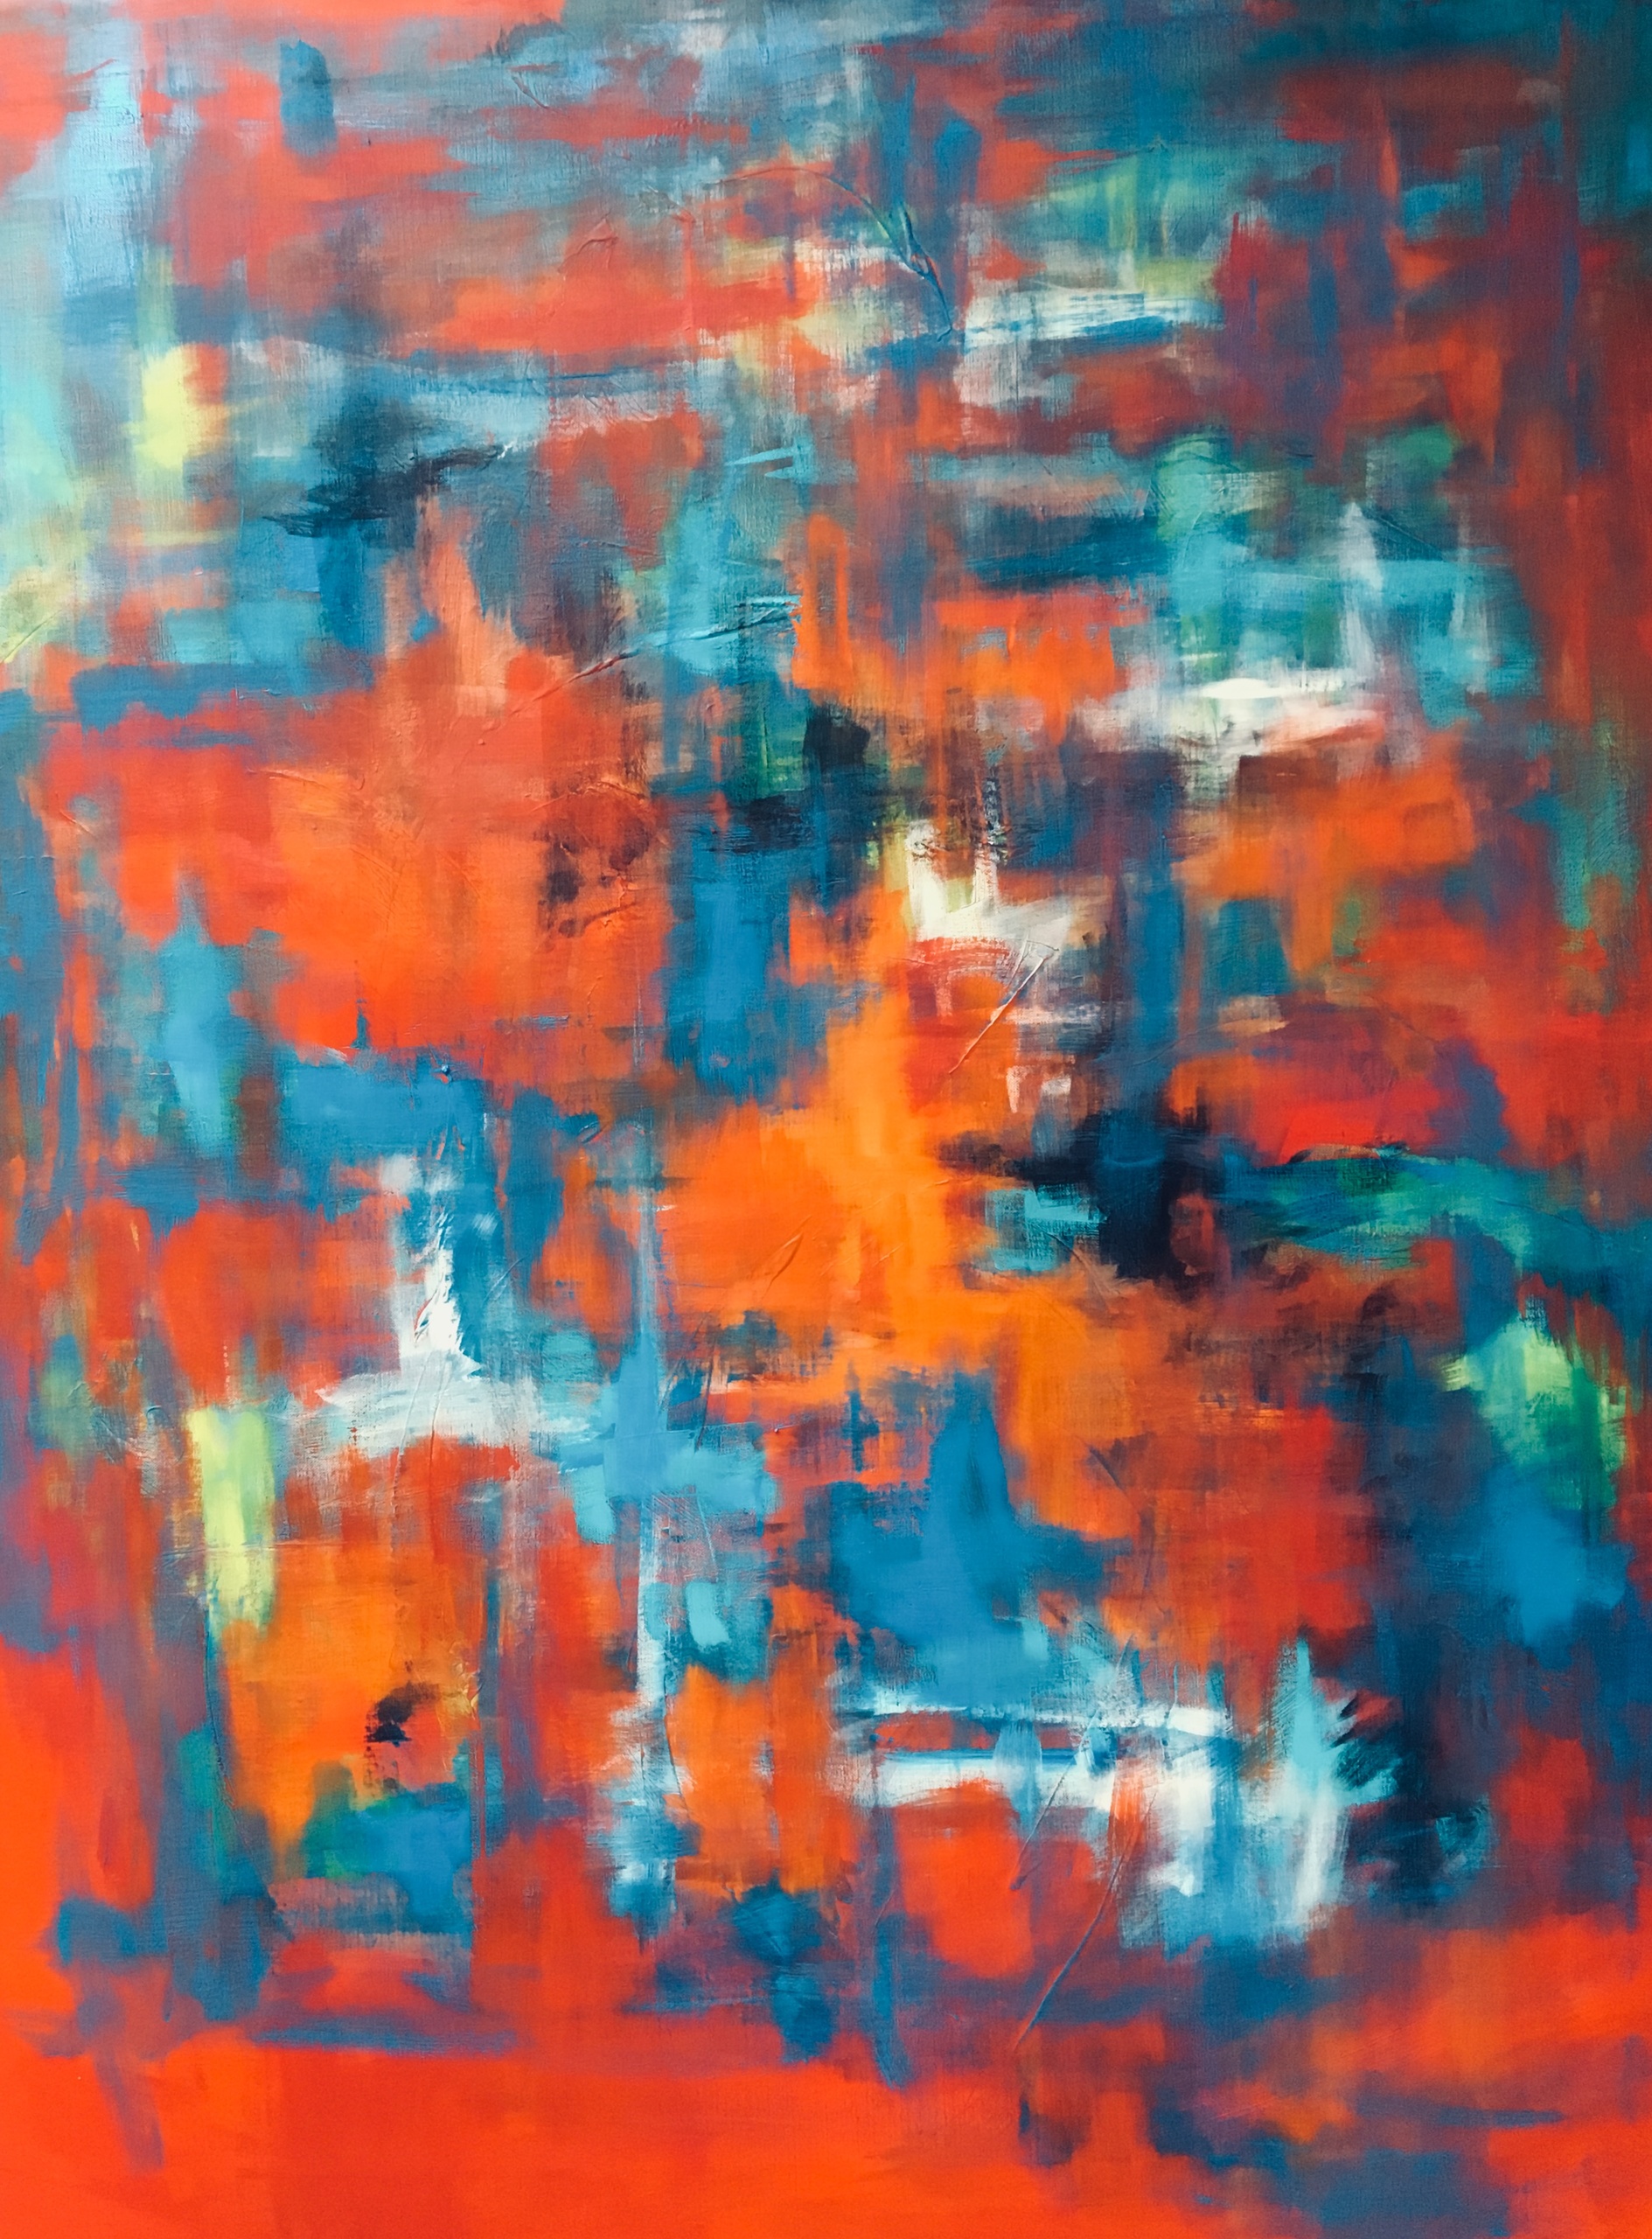 Abstrakt maleri hvor røde, orange, blå og hvide felter snor sig ind og ud af hinanden.